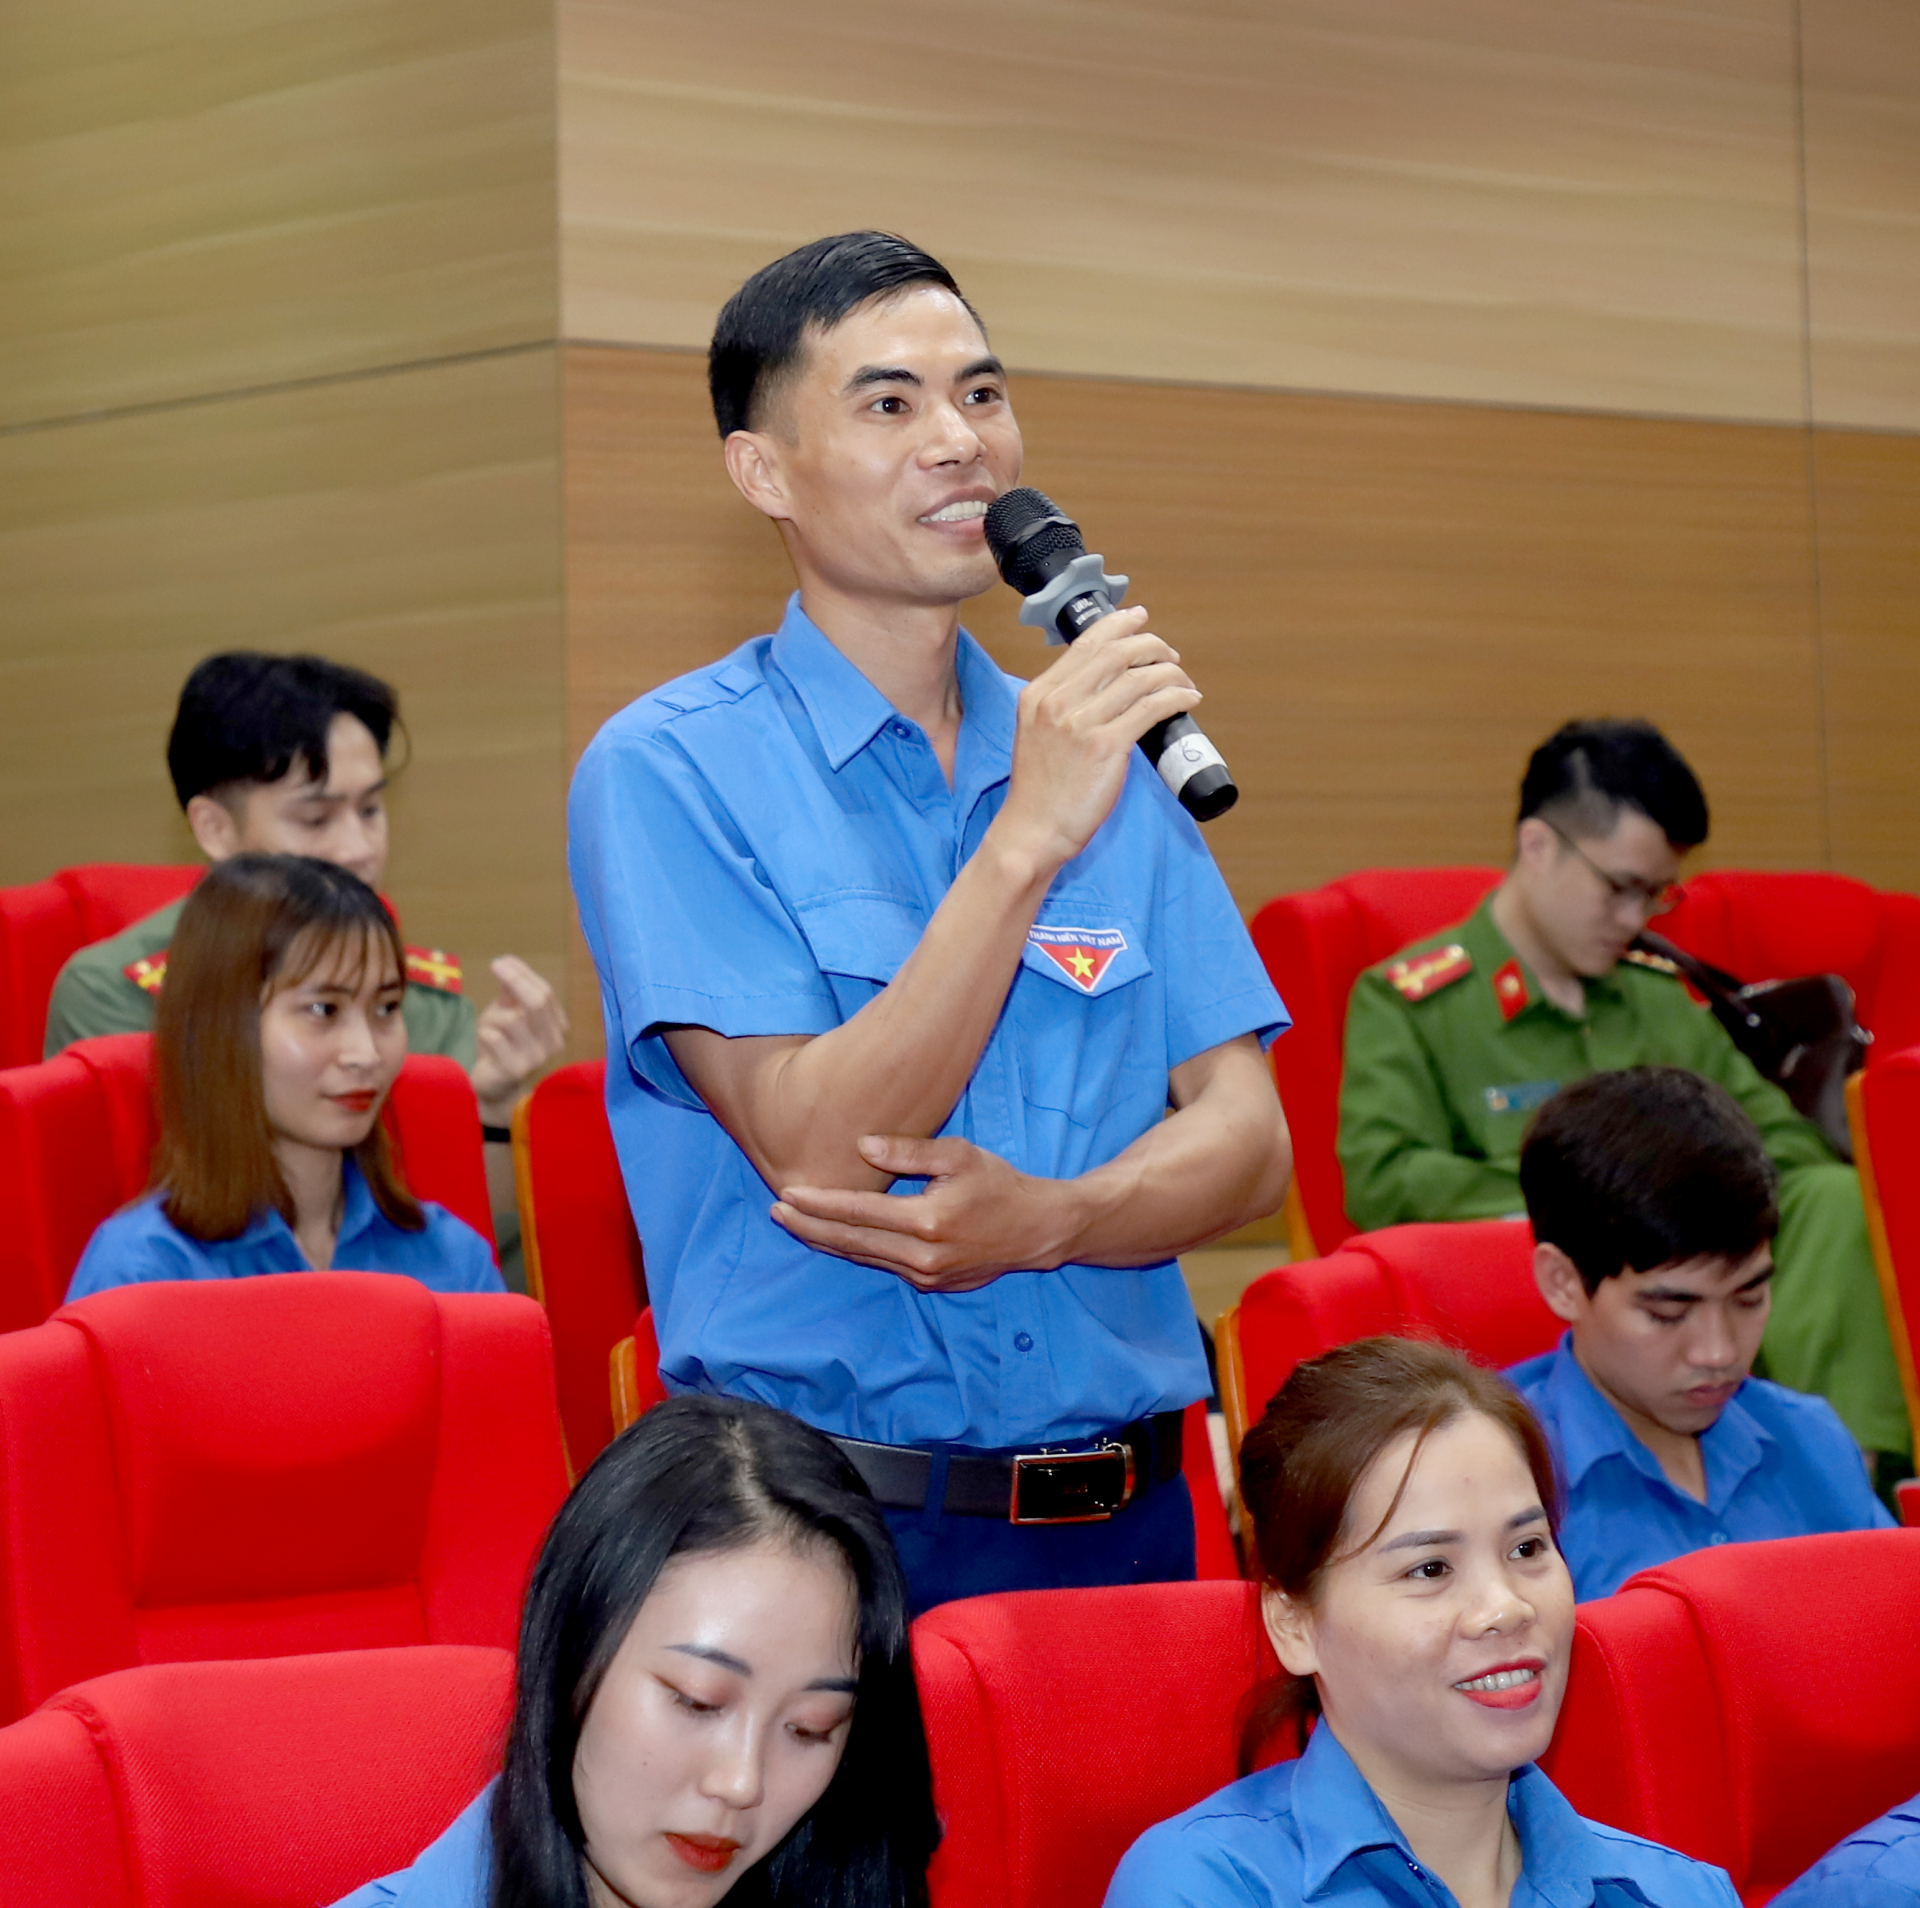 Giám đốc HTX Thanh niên Phương Tiến (Vị Xuyên) Nguyễn Xuân Tiến chia sẻ quá trình khởi nghiệp về lĩnh vực nông nghiệp.
